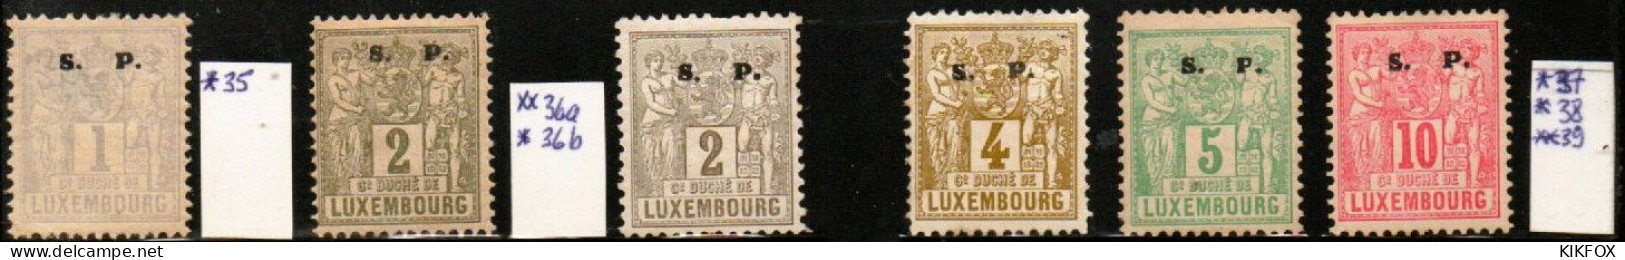 Luxembourg , Luxemburg ,1882, MI 35 - 39   FREIMARKEN ALLEGORIE, S.P LARGE, UNGEBRAUCHT, CHARNIERE - Service